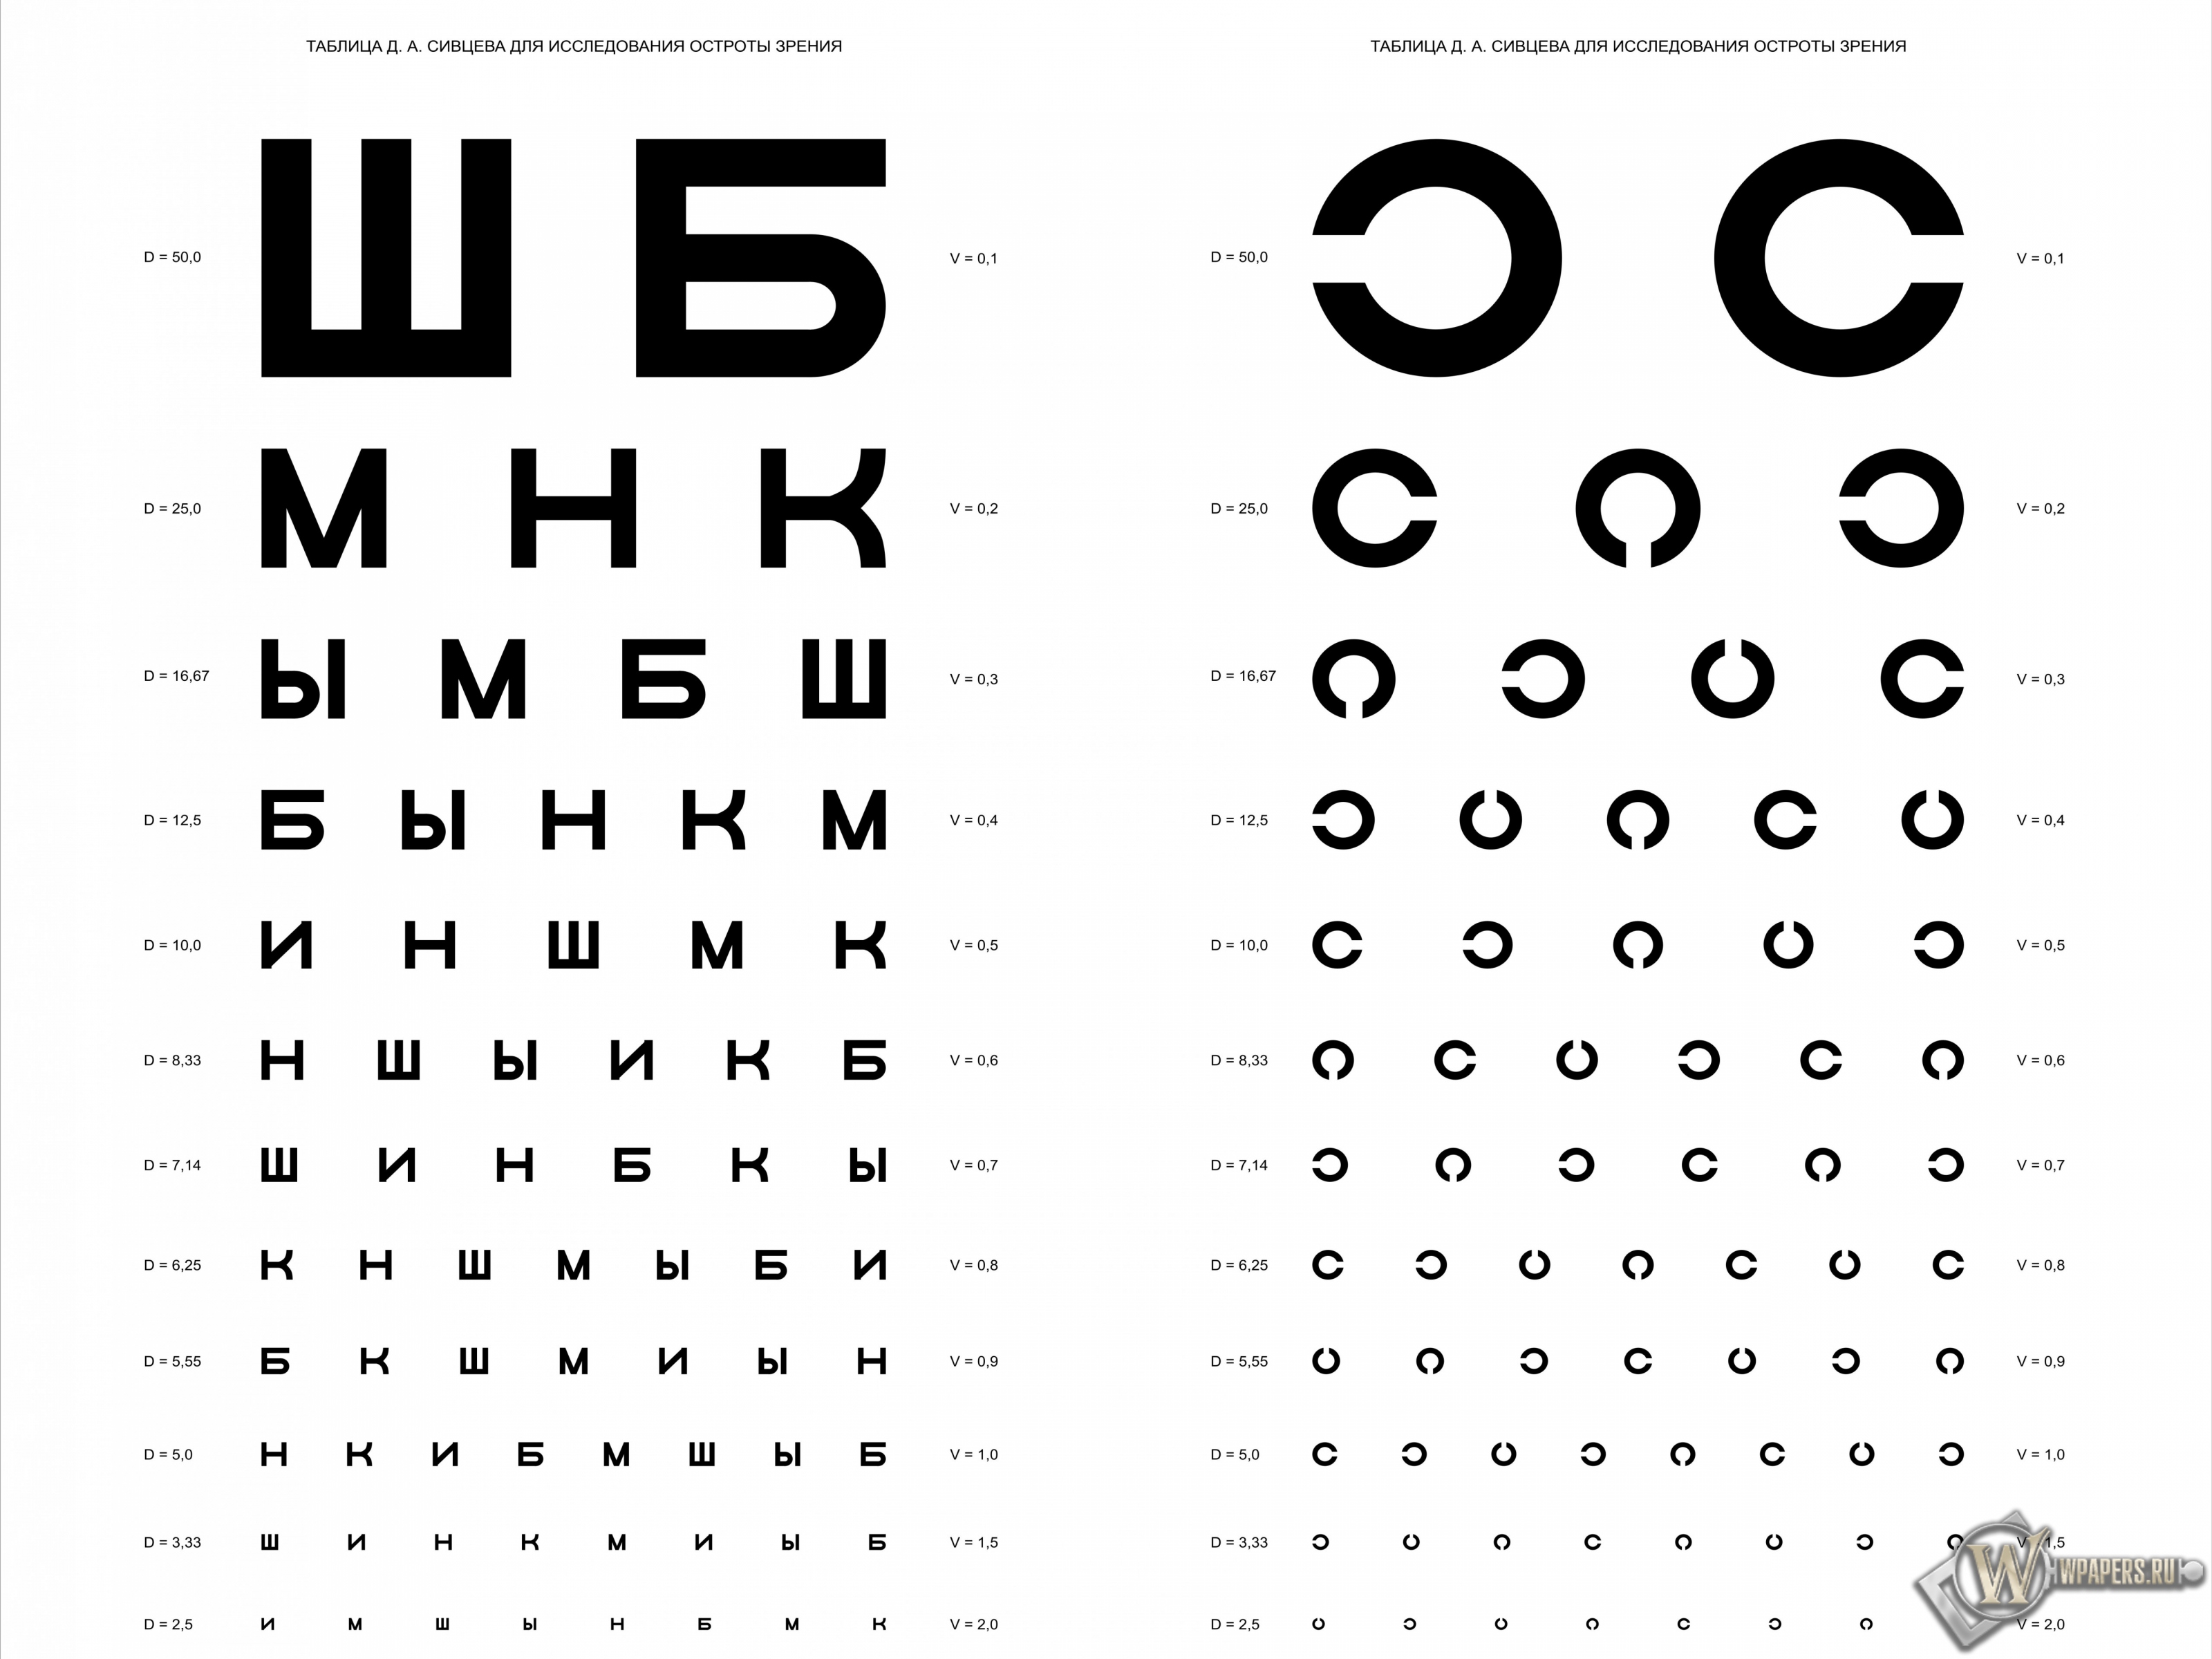 Таблица Д.А. Сивцева для проверки зрения 3200x2400